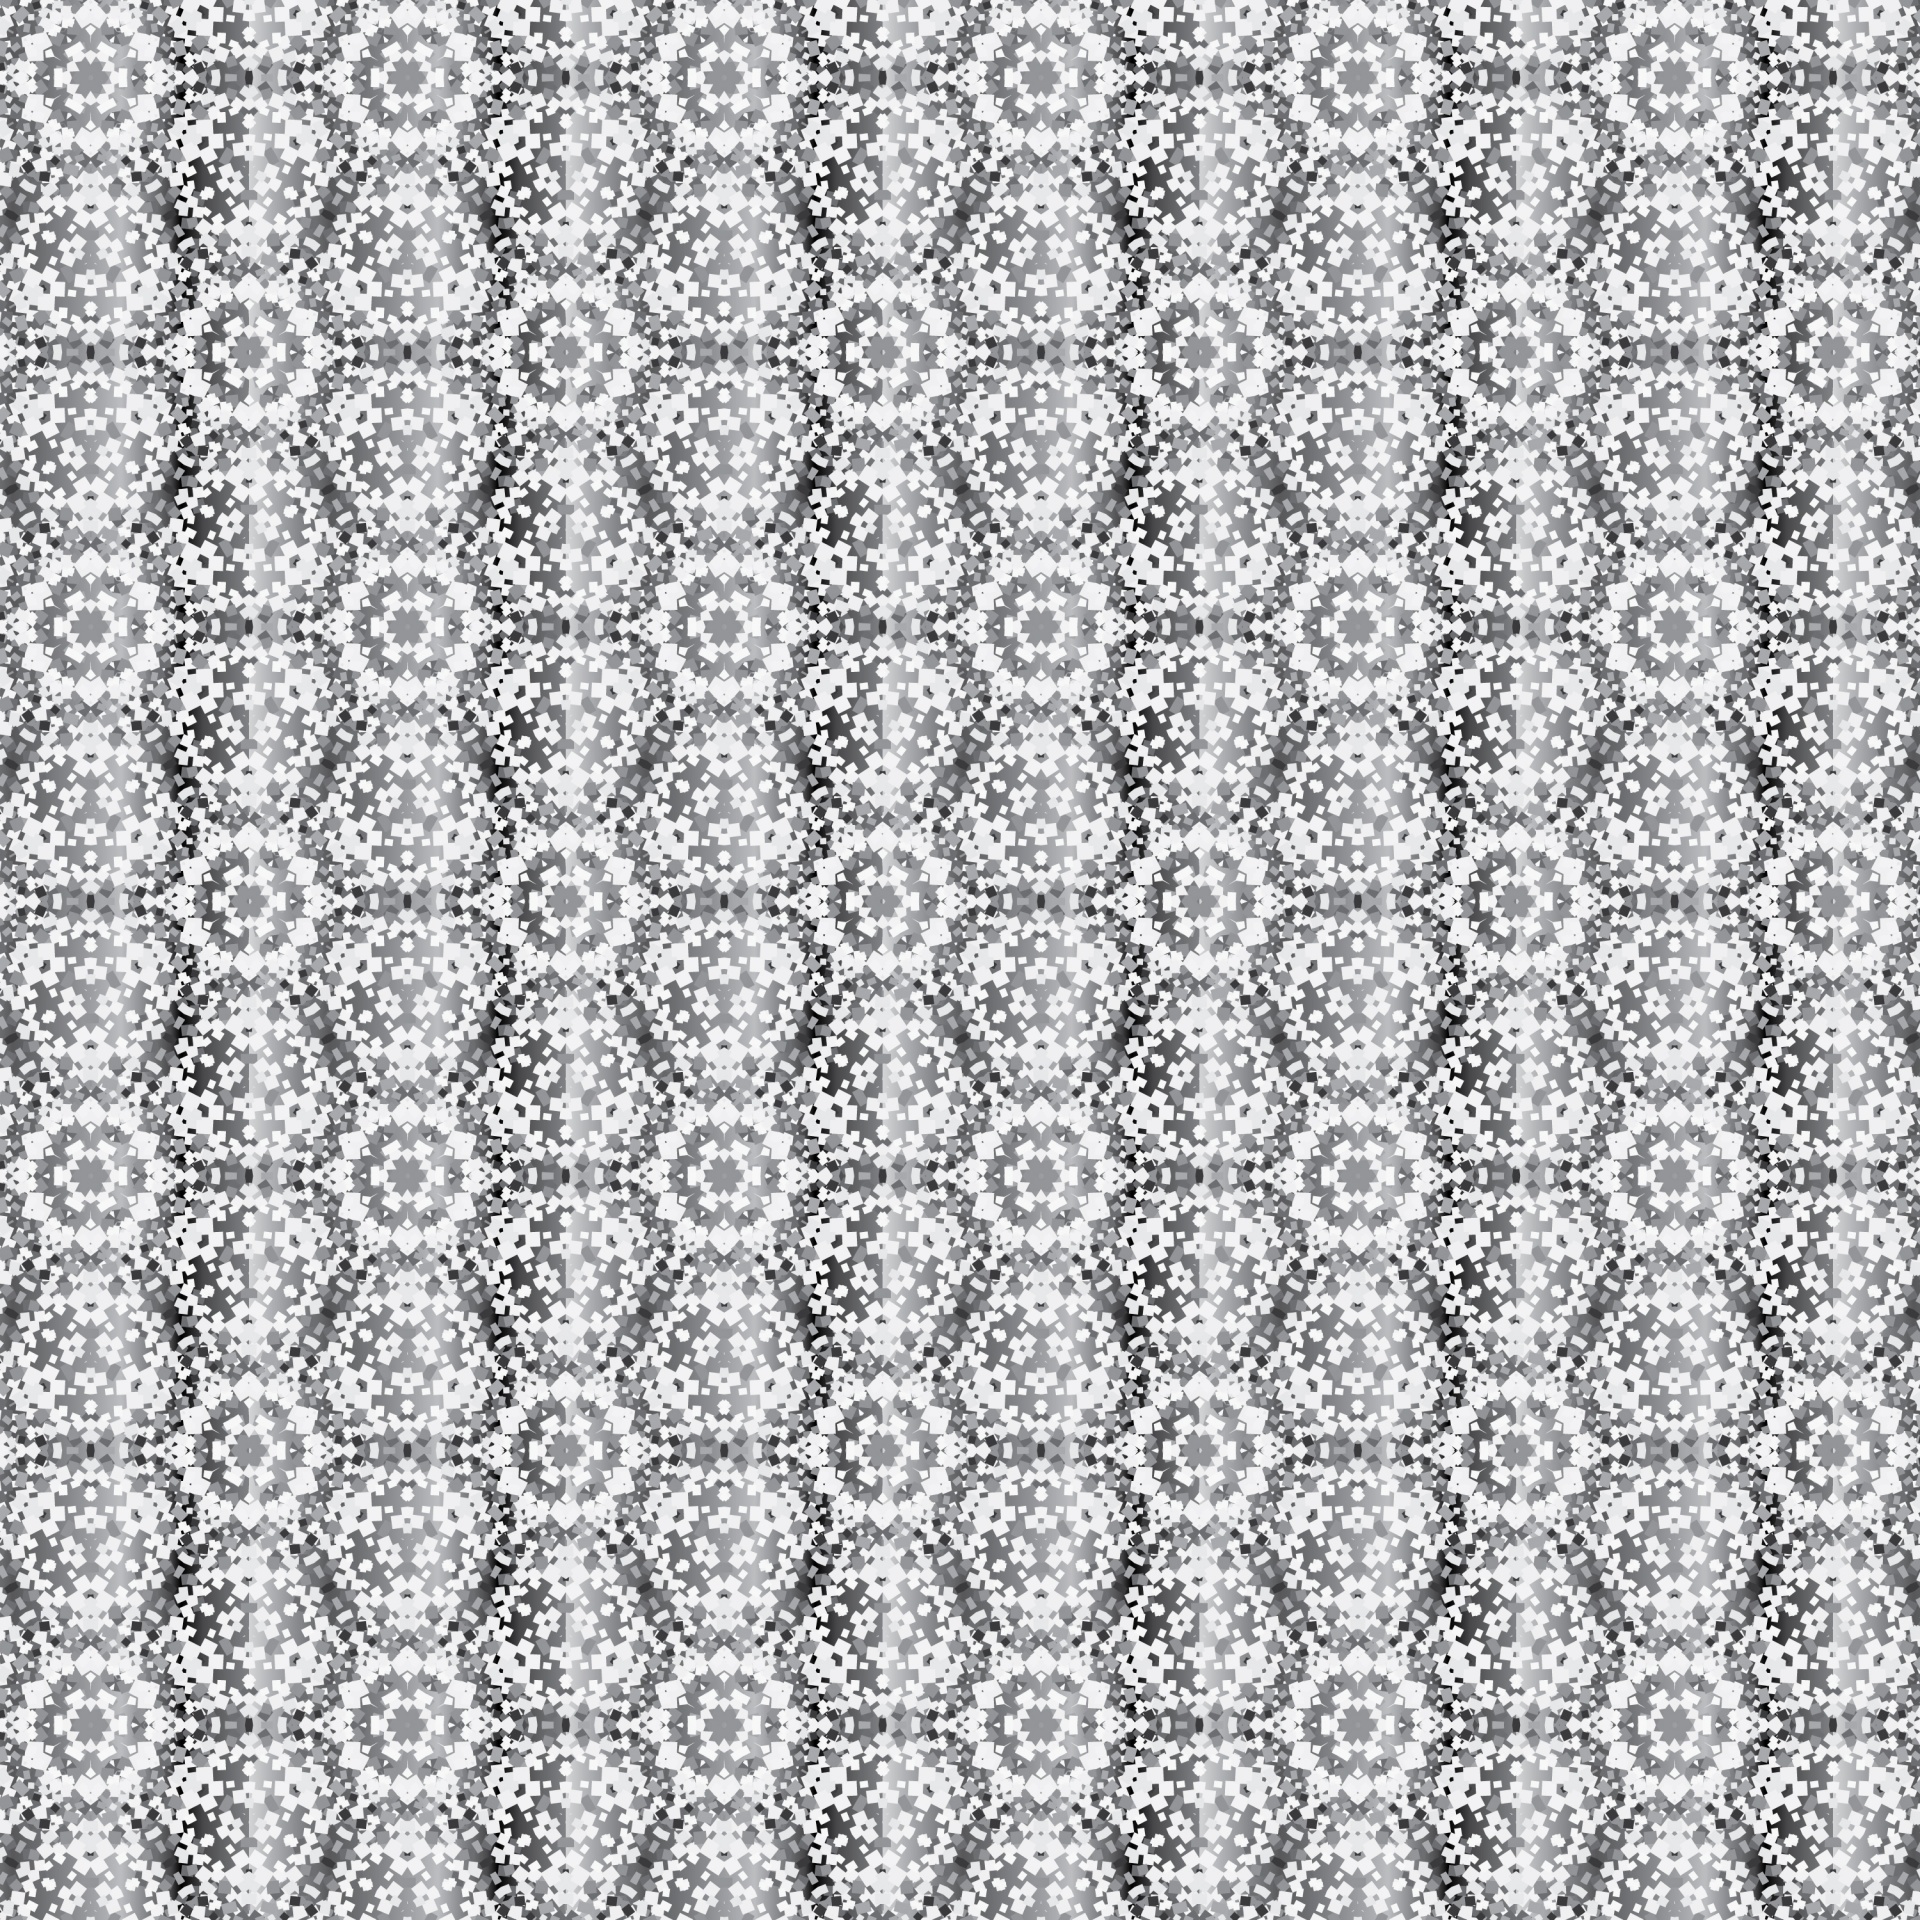 Grey Geometric Textile Pattern